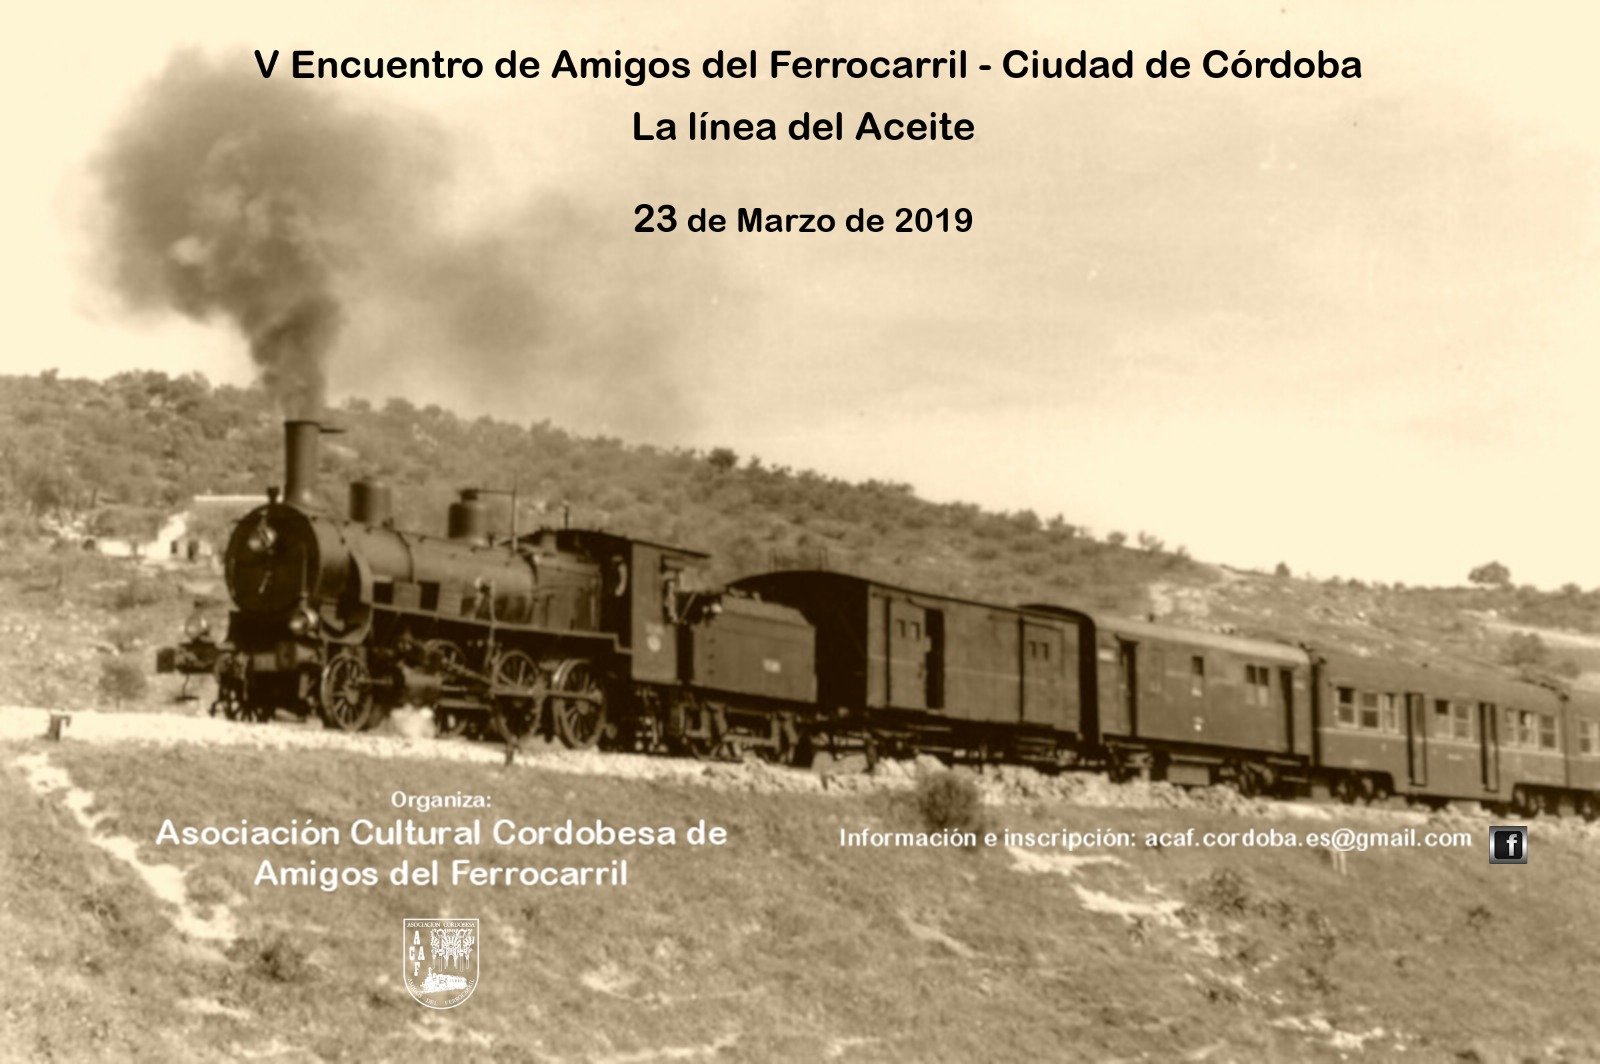 V Encuentro Amigos del Ferrocarril "Ciudad de Córdoba"